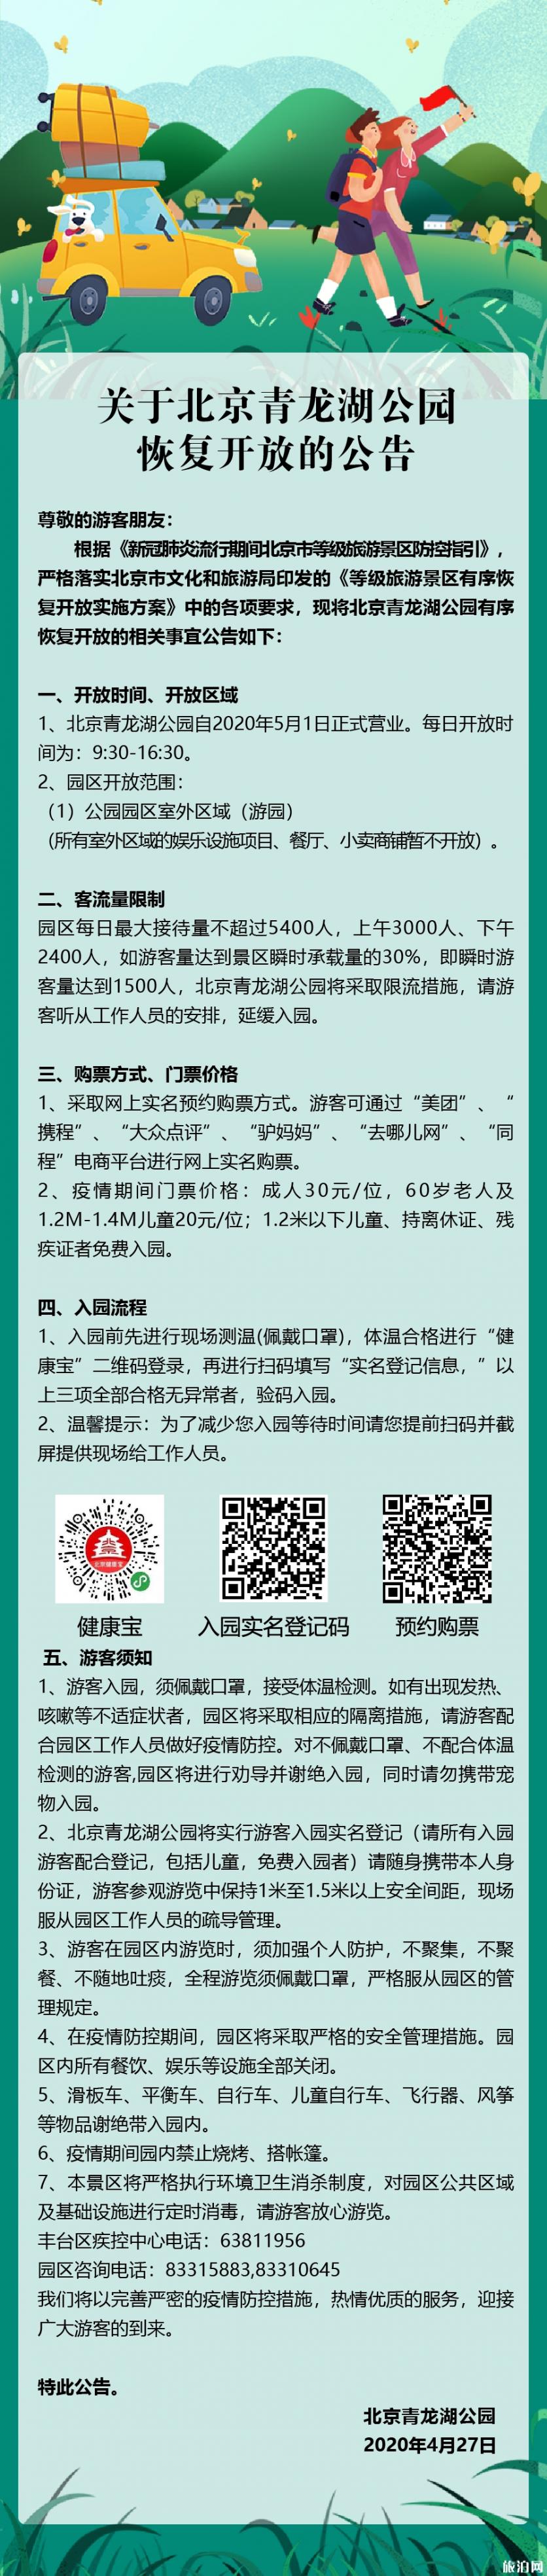 北京青龙湖公园开放了吗 2020北京青龙湖公园游玩攻略